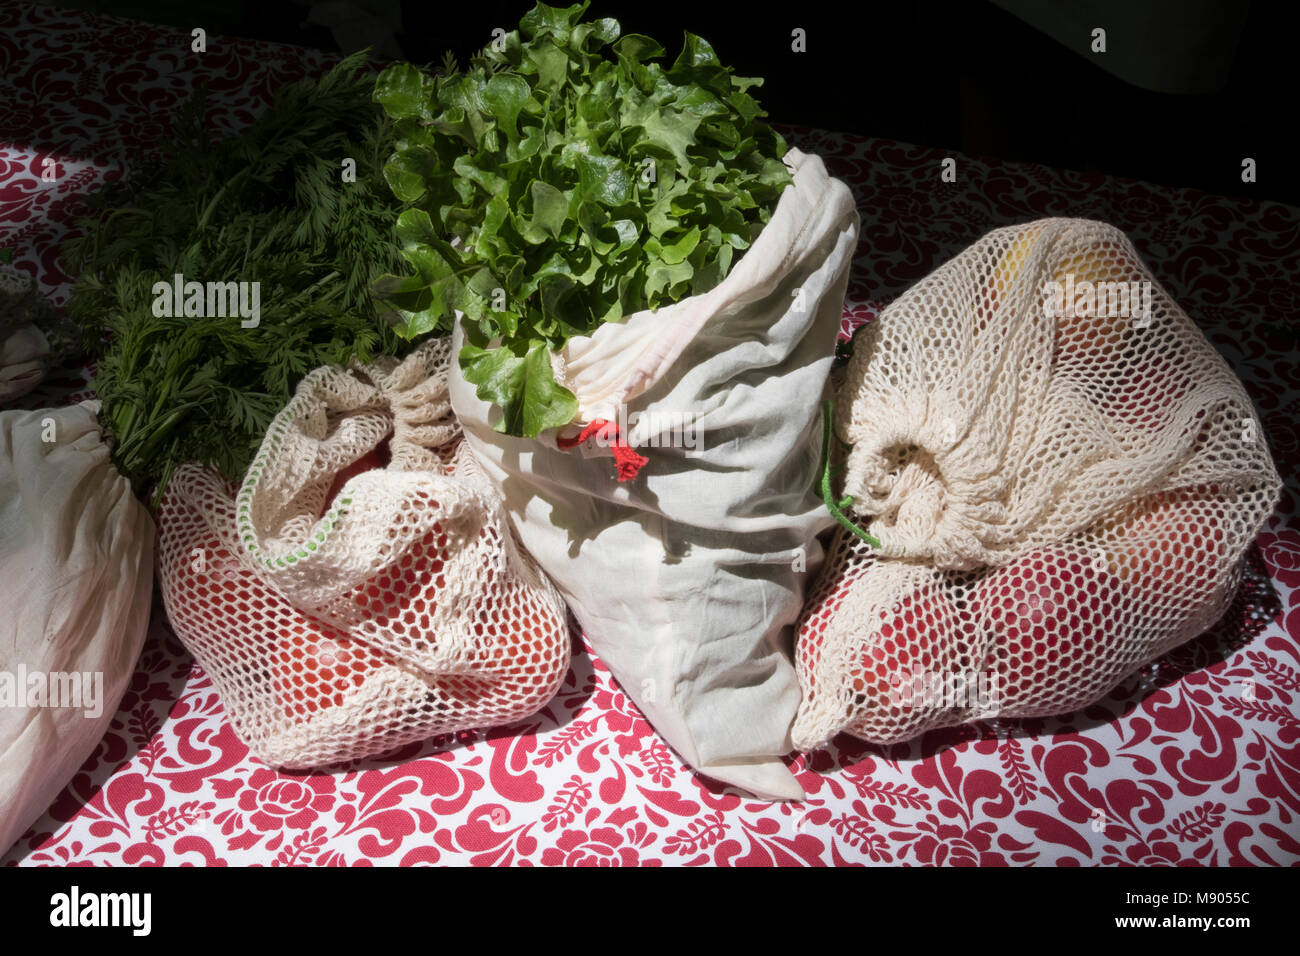 reusable eco food produce bags My Vita bag Stock Photo